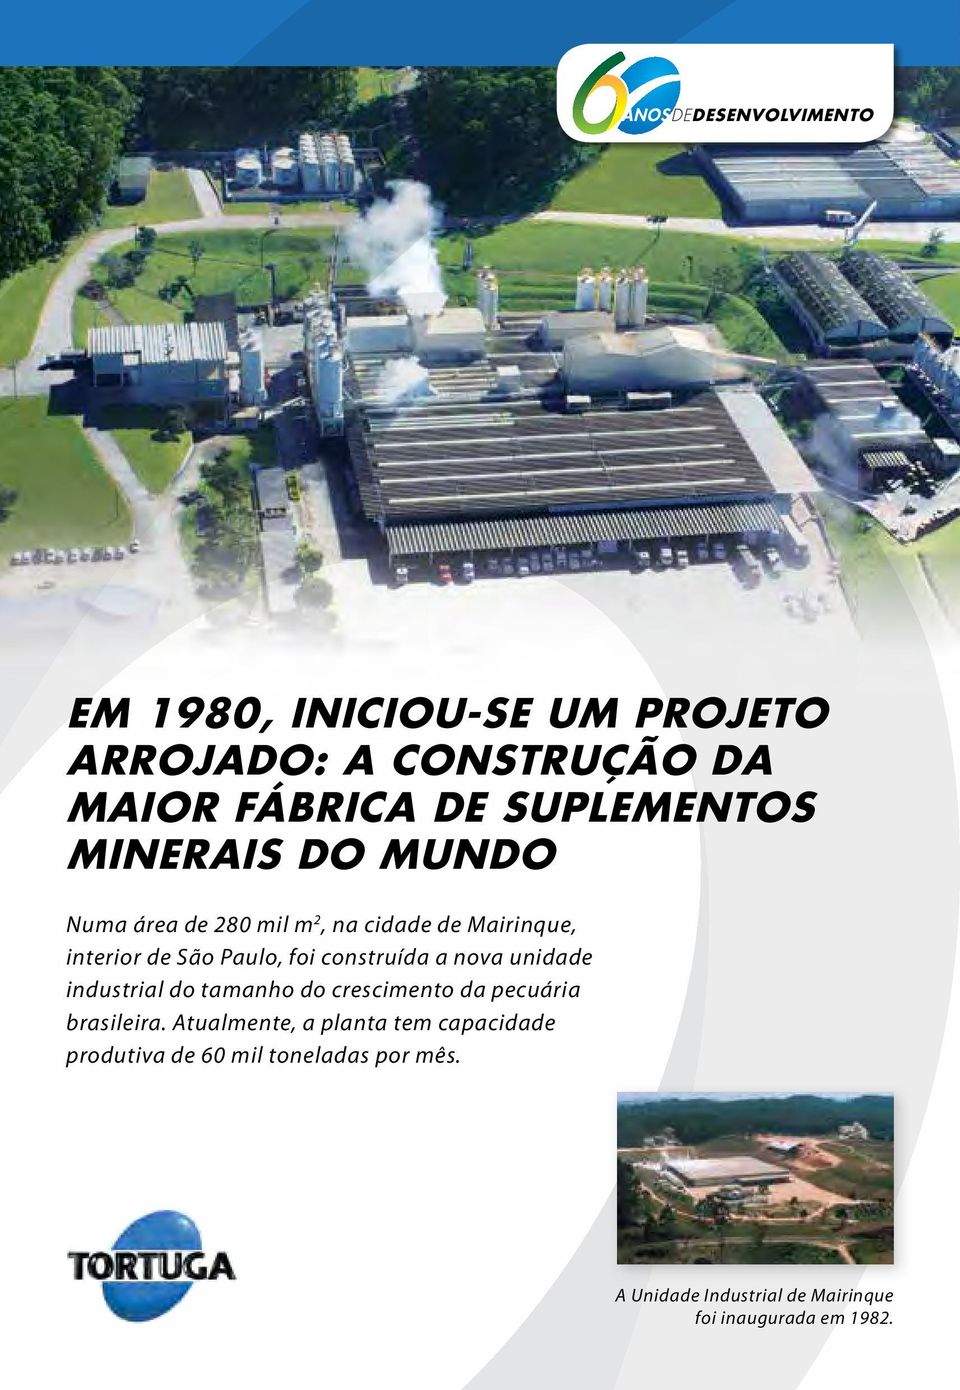 construída a nova unidade industrial do tamanho do crescimento da pecuária brasileira.